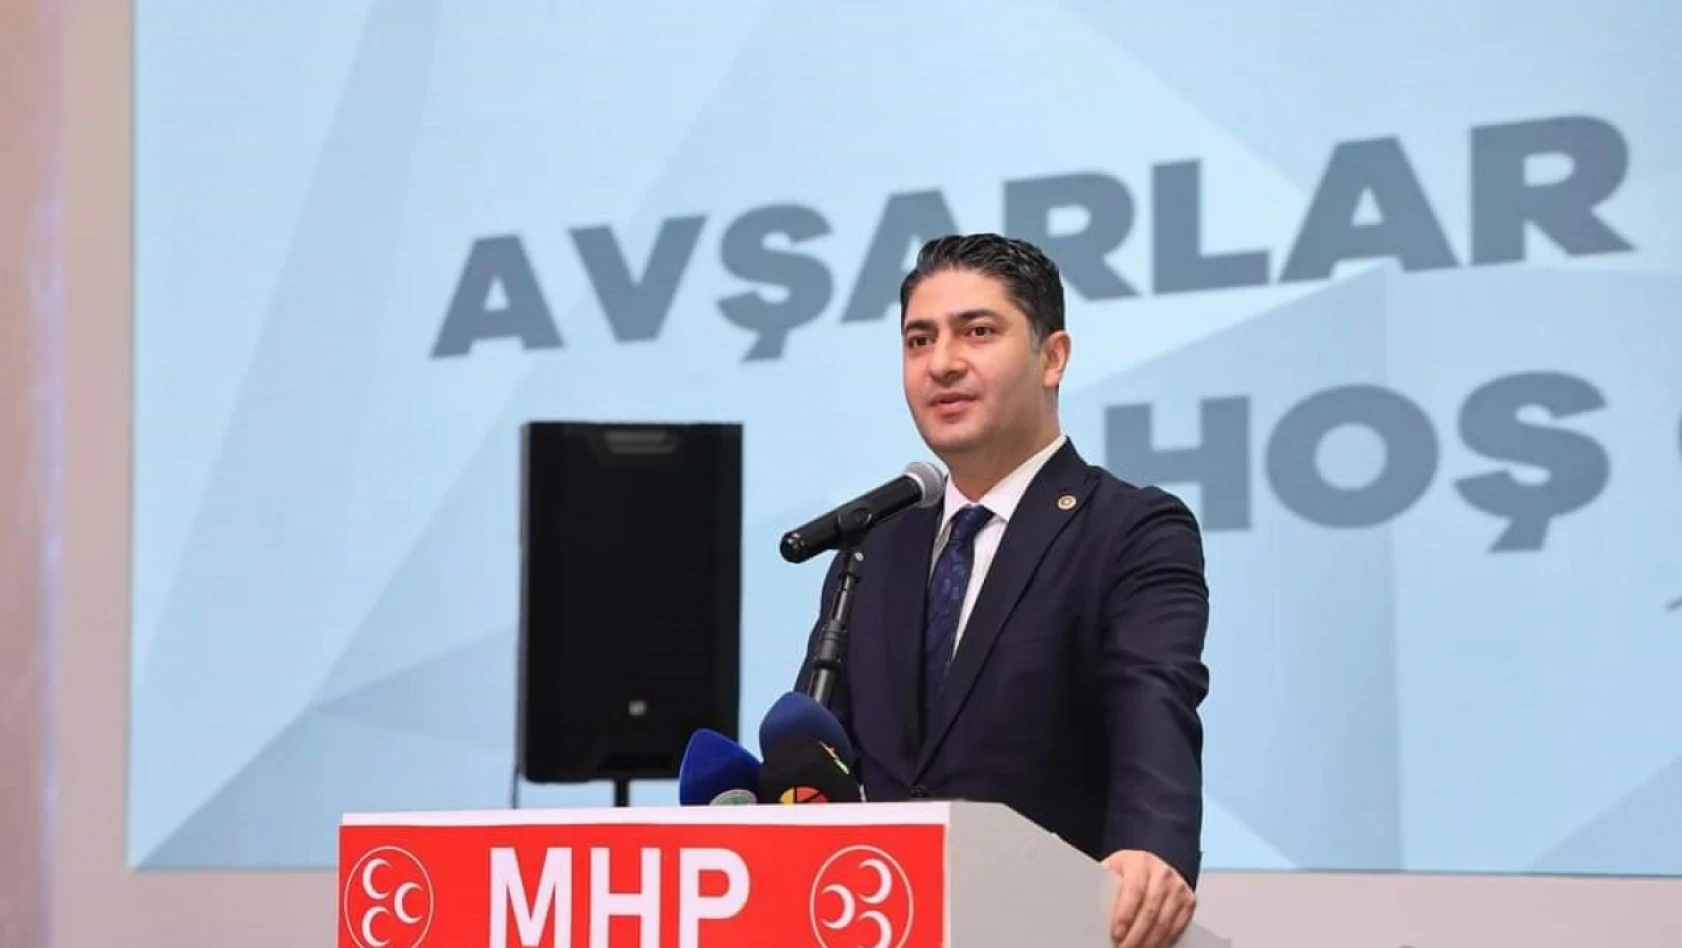 MHP'li Özdemir: 'Cumhur'un Kesin Zaferi İle Sonuçlanacak'